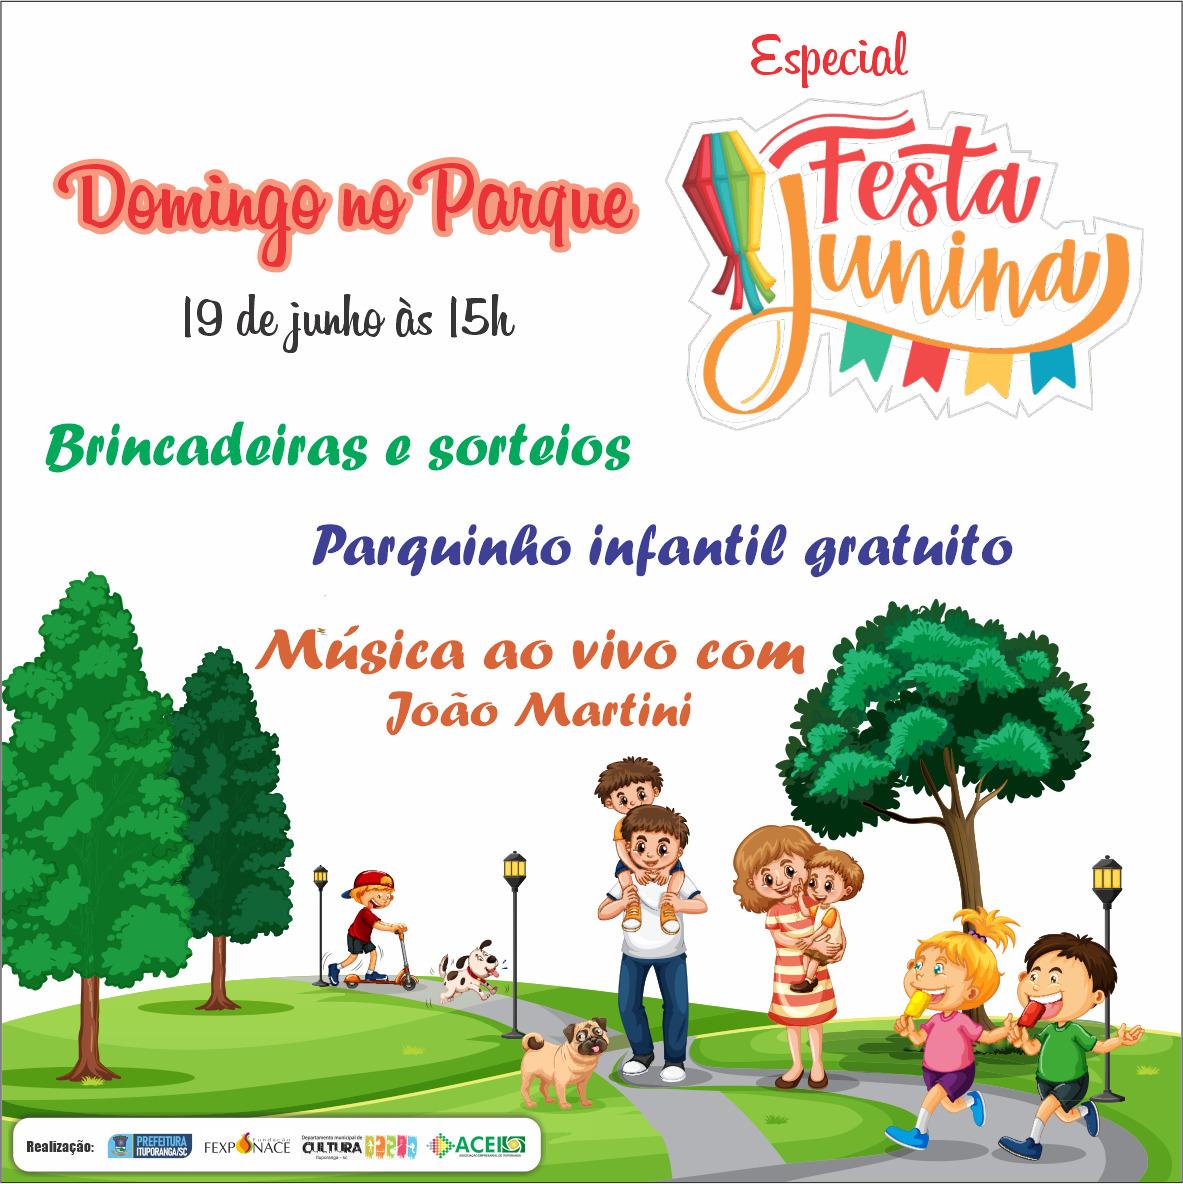 Ituporanga terá neste domingo mais uma edição do projeto Domingo no Parque, especial de festa junina